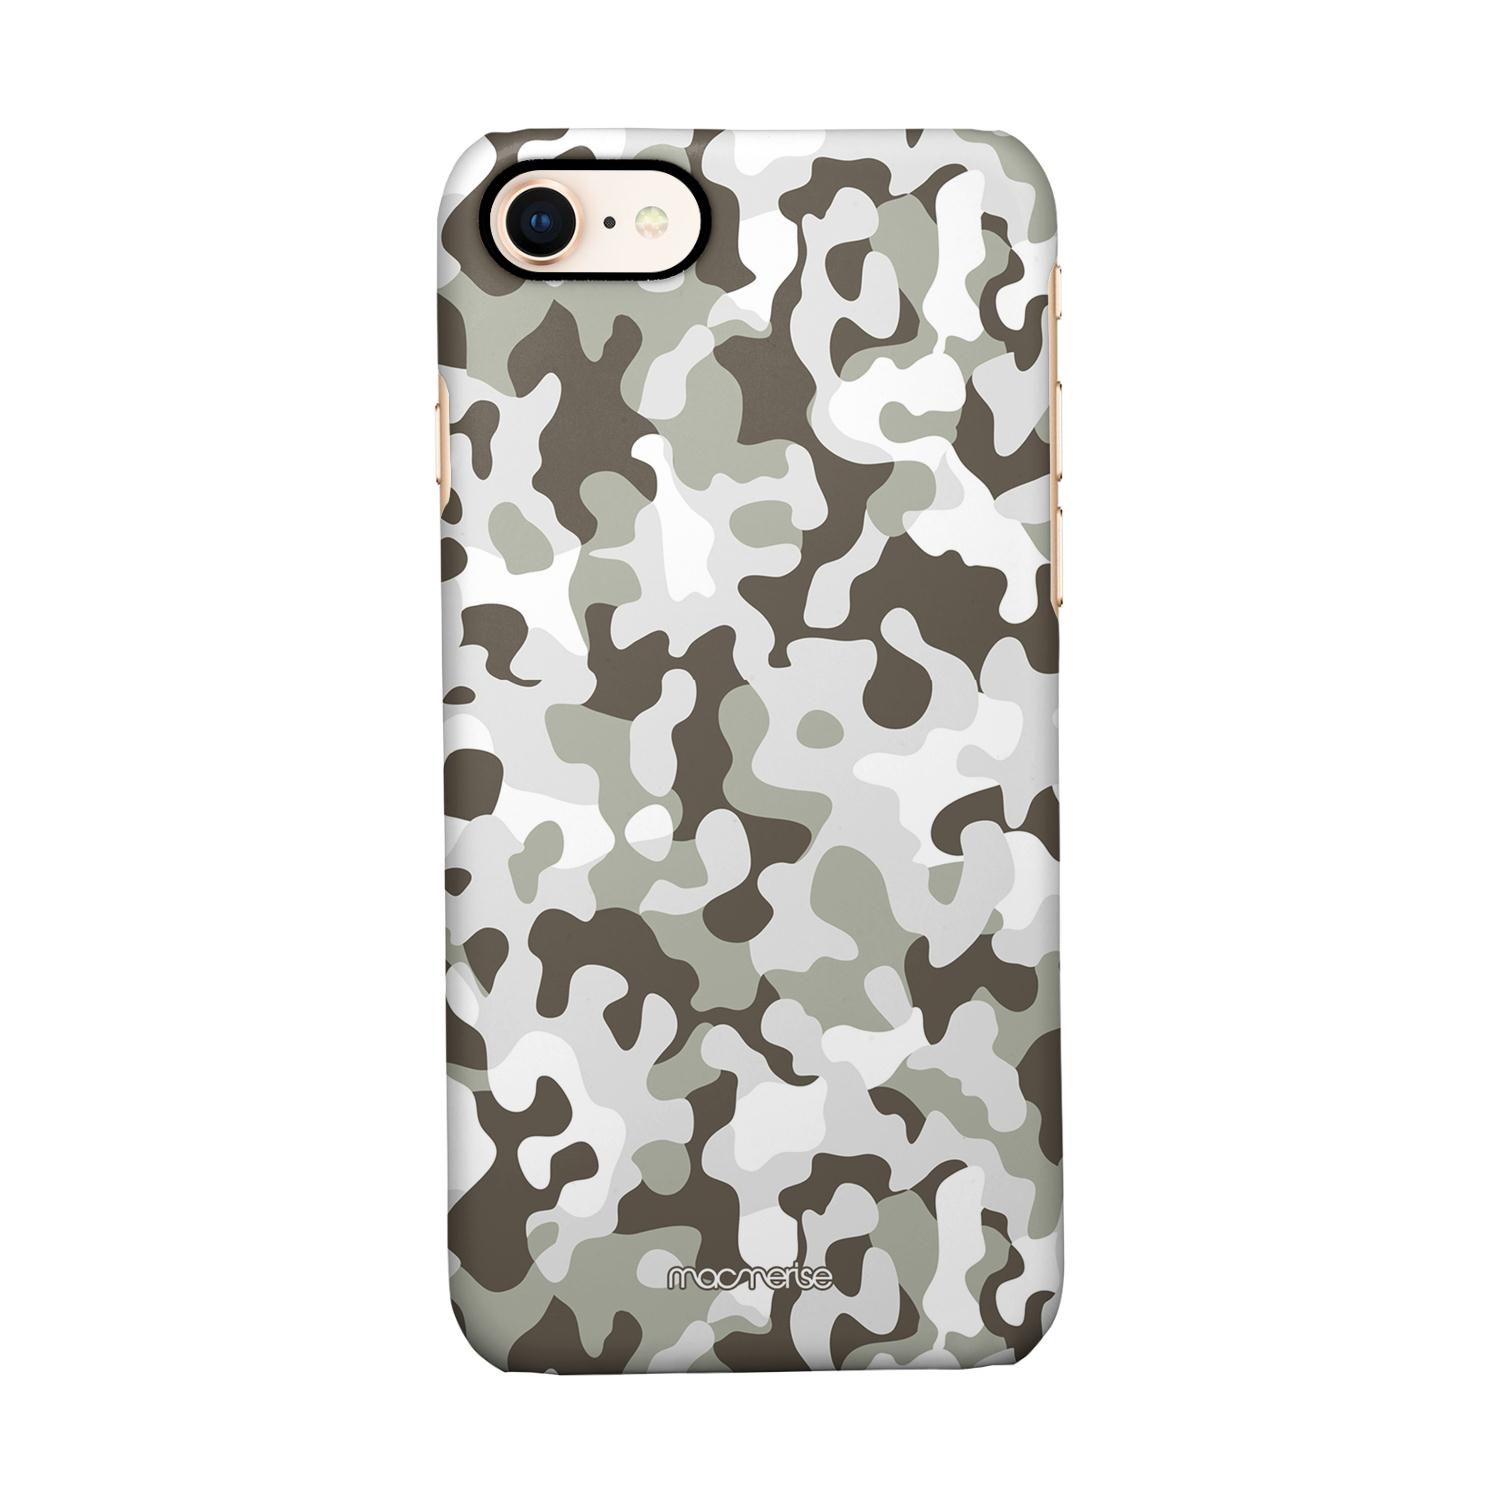 Buy Camo Grey - Sleek Phone Case for iPhone 8 Online